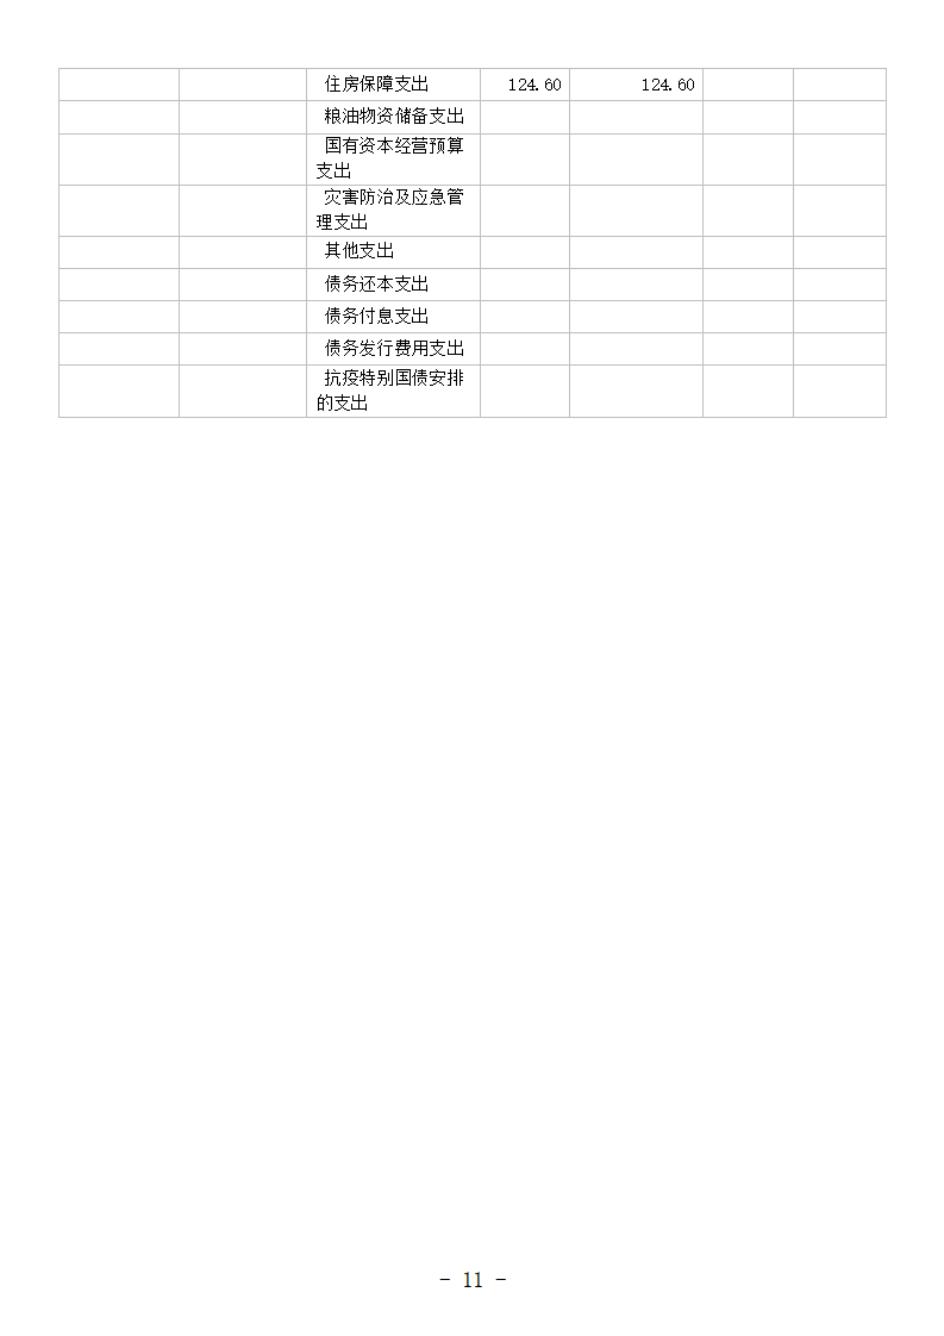 省考古院2024年四川省省级单位预算公开模板(3.14)_12.jpg